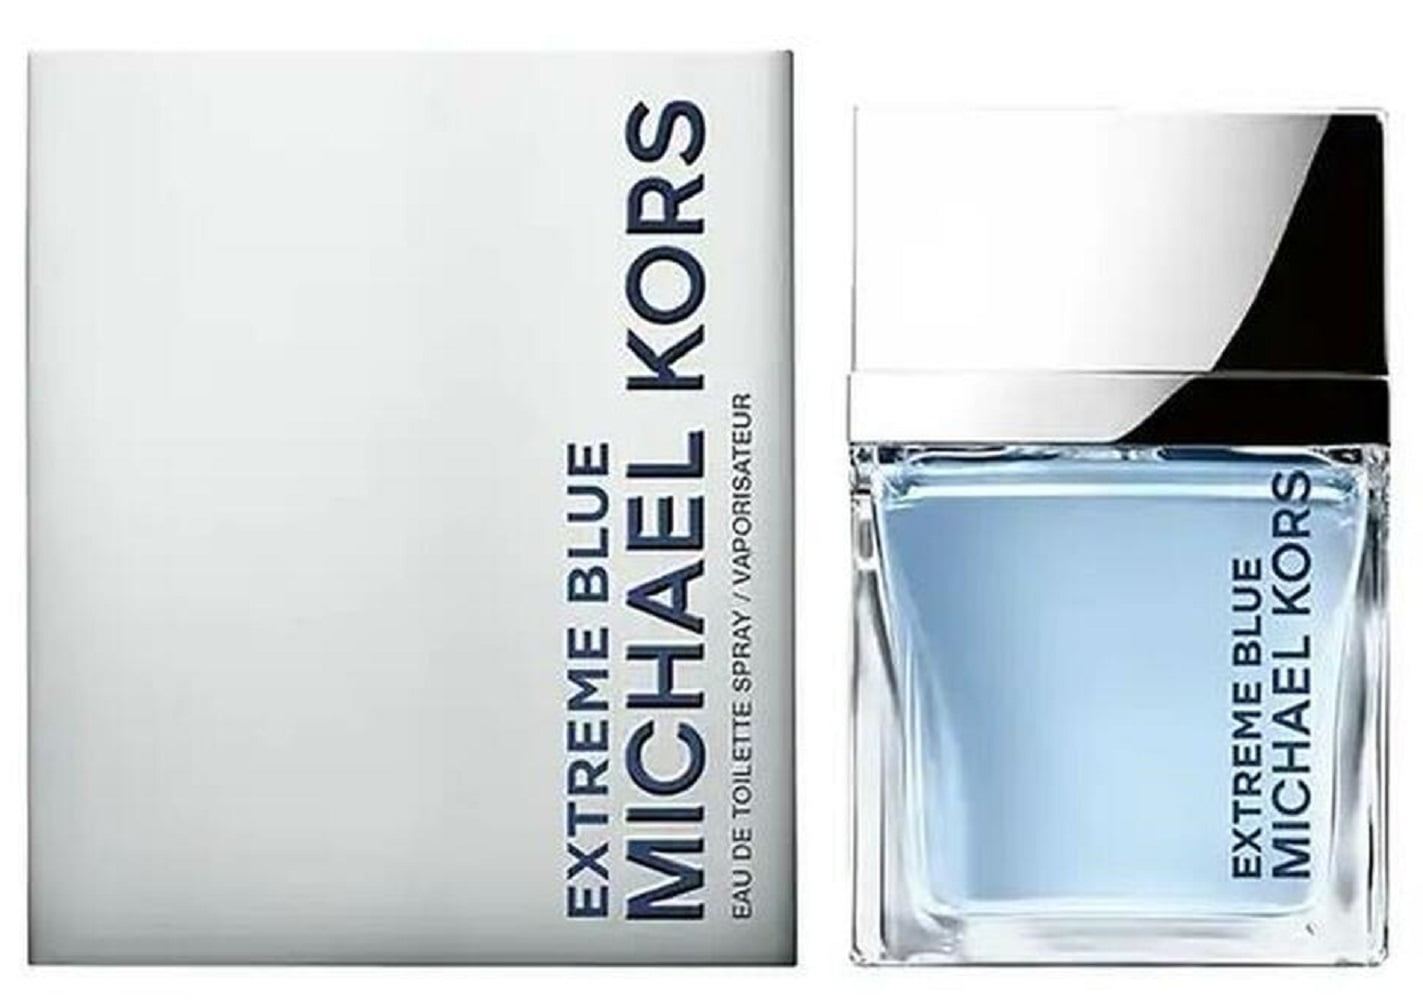 Michael Kors Extreme Blue For Men Cologne Eau de Toilette  oz ~ 120 ml  Spray 